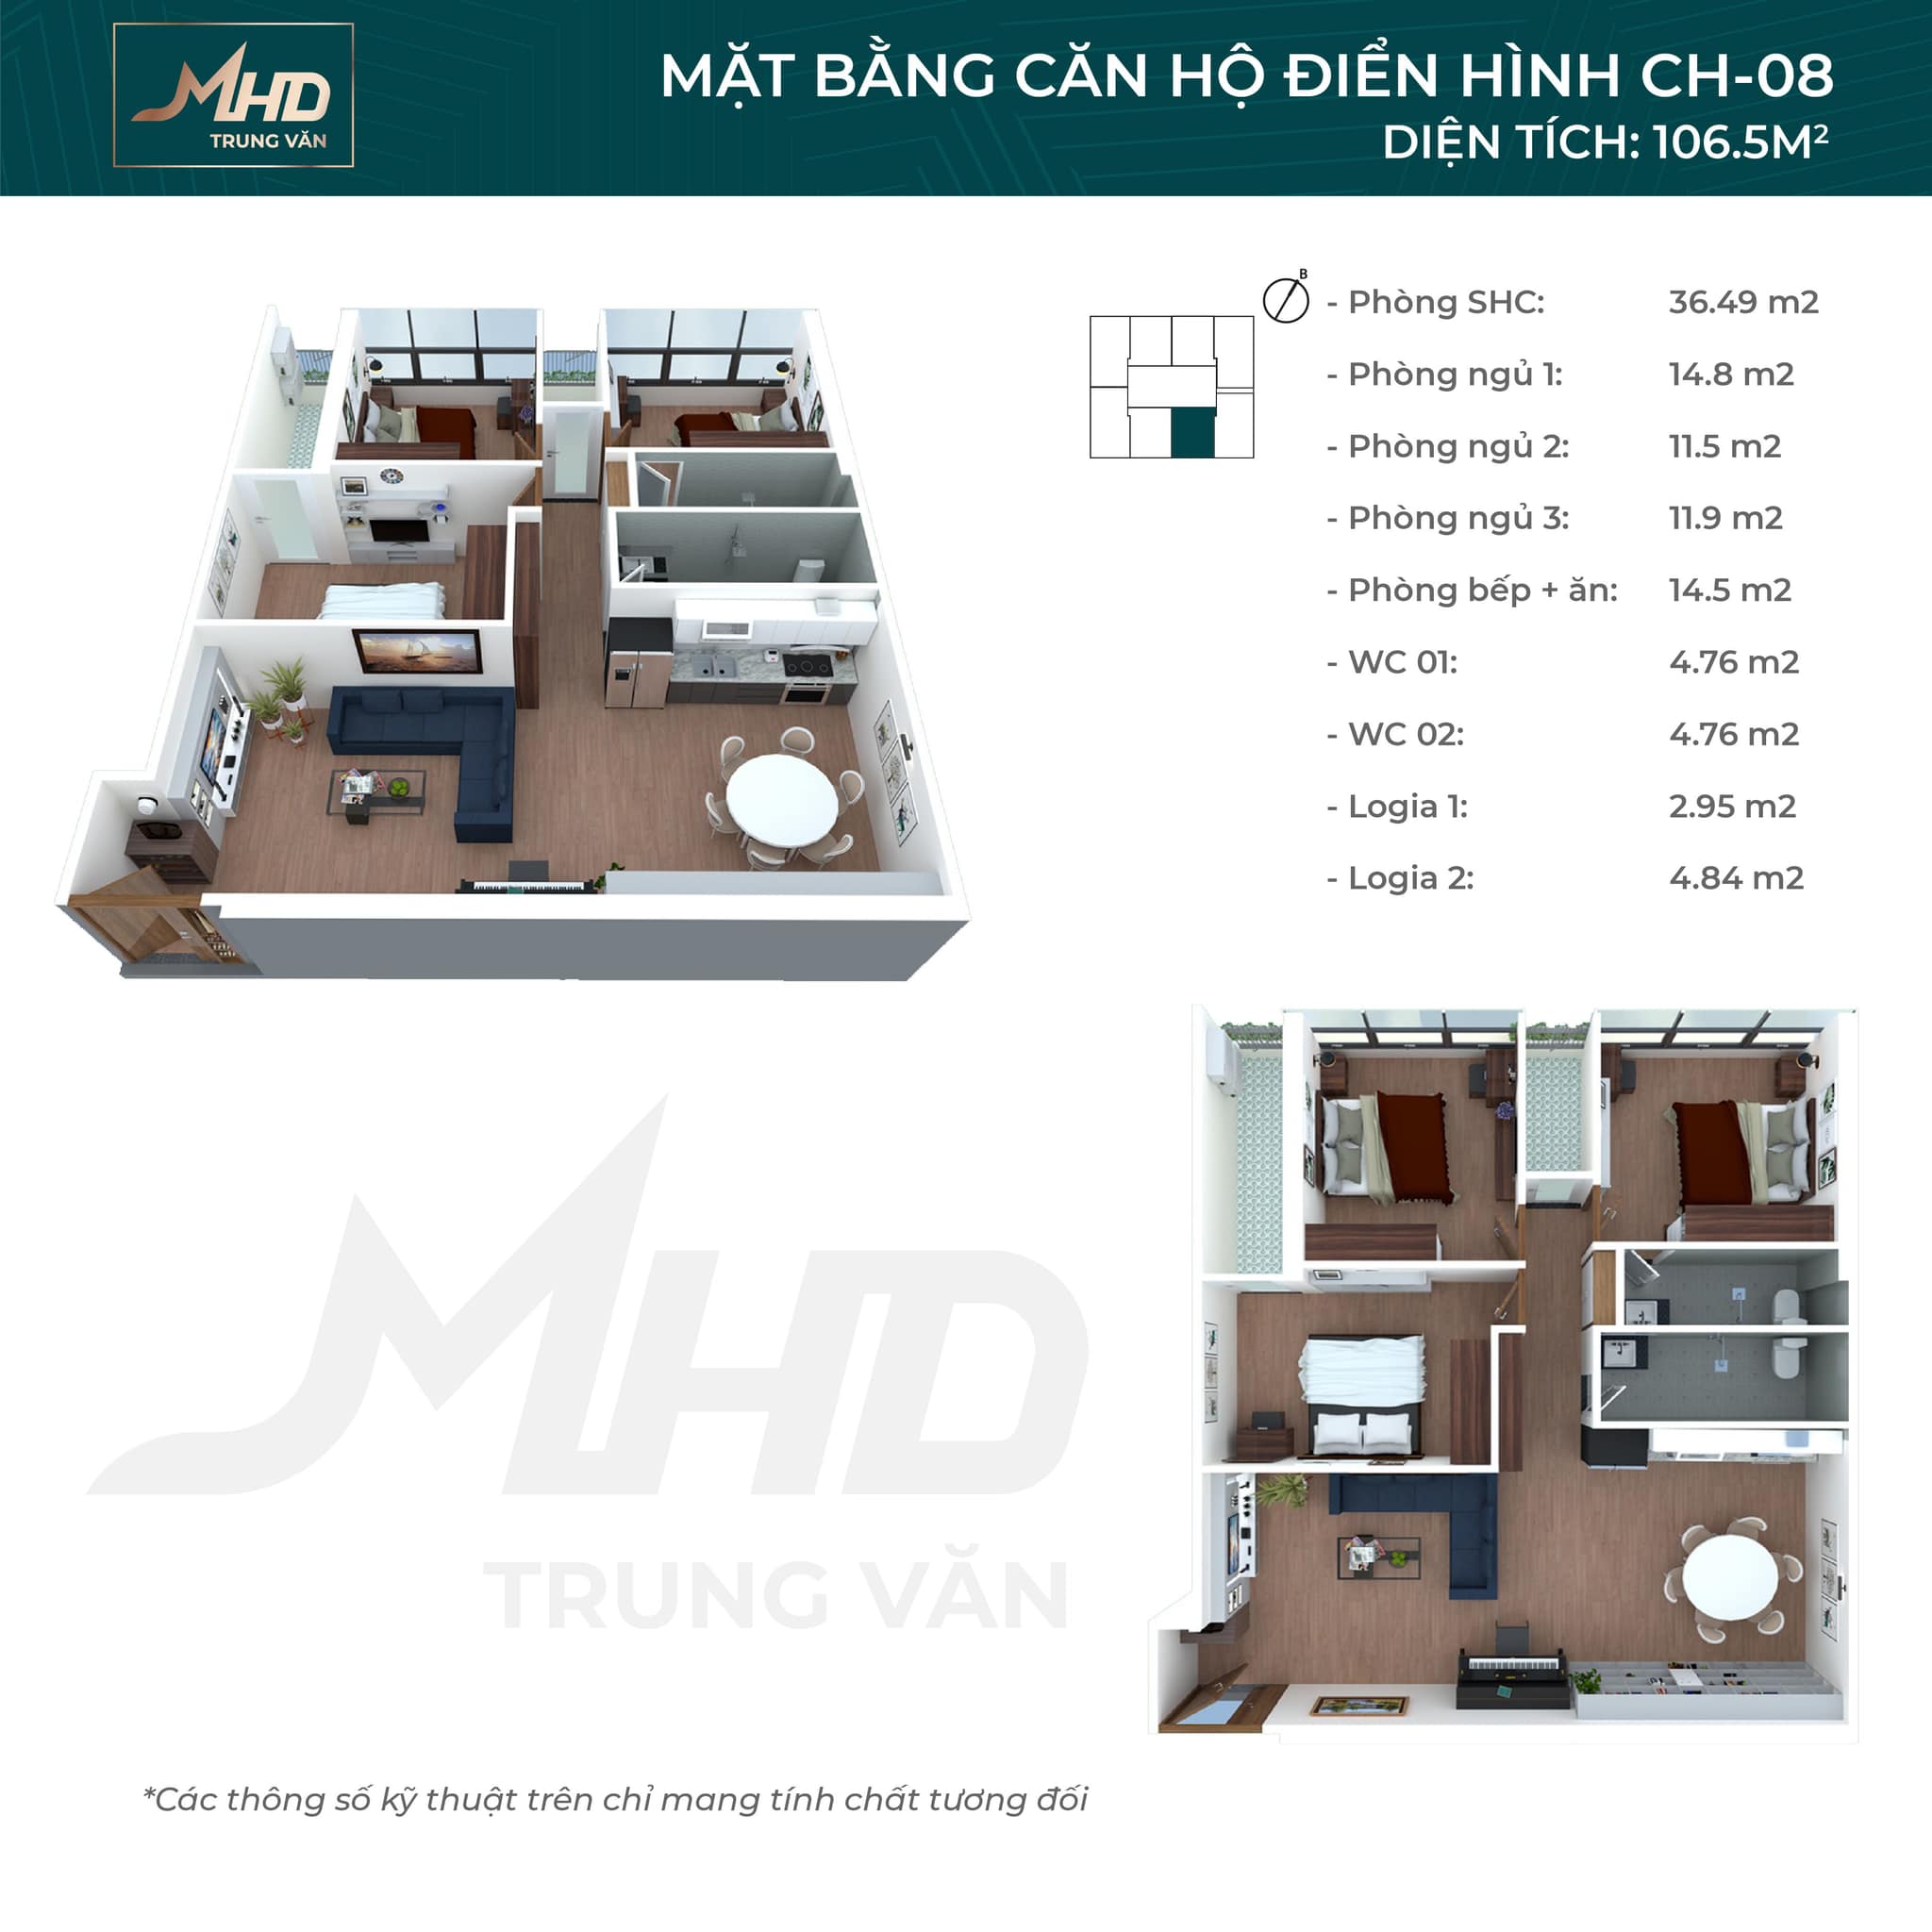 Bán căn 3 ngủ + 1 thiết kế đẹp nhất, view đẹp nhất dự án MHD Trung Văn - 29 Tố Hữu. LH 0934 306 262 4